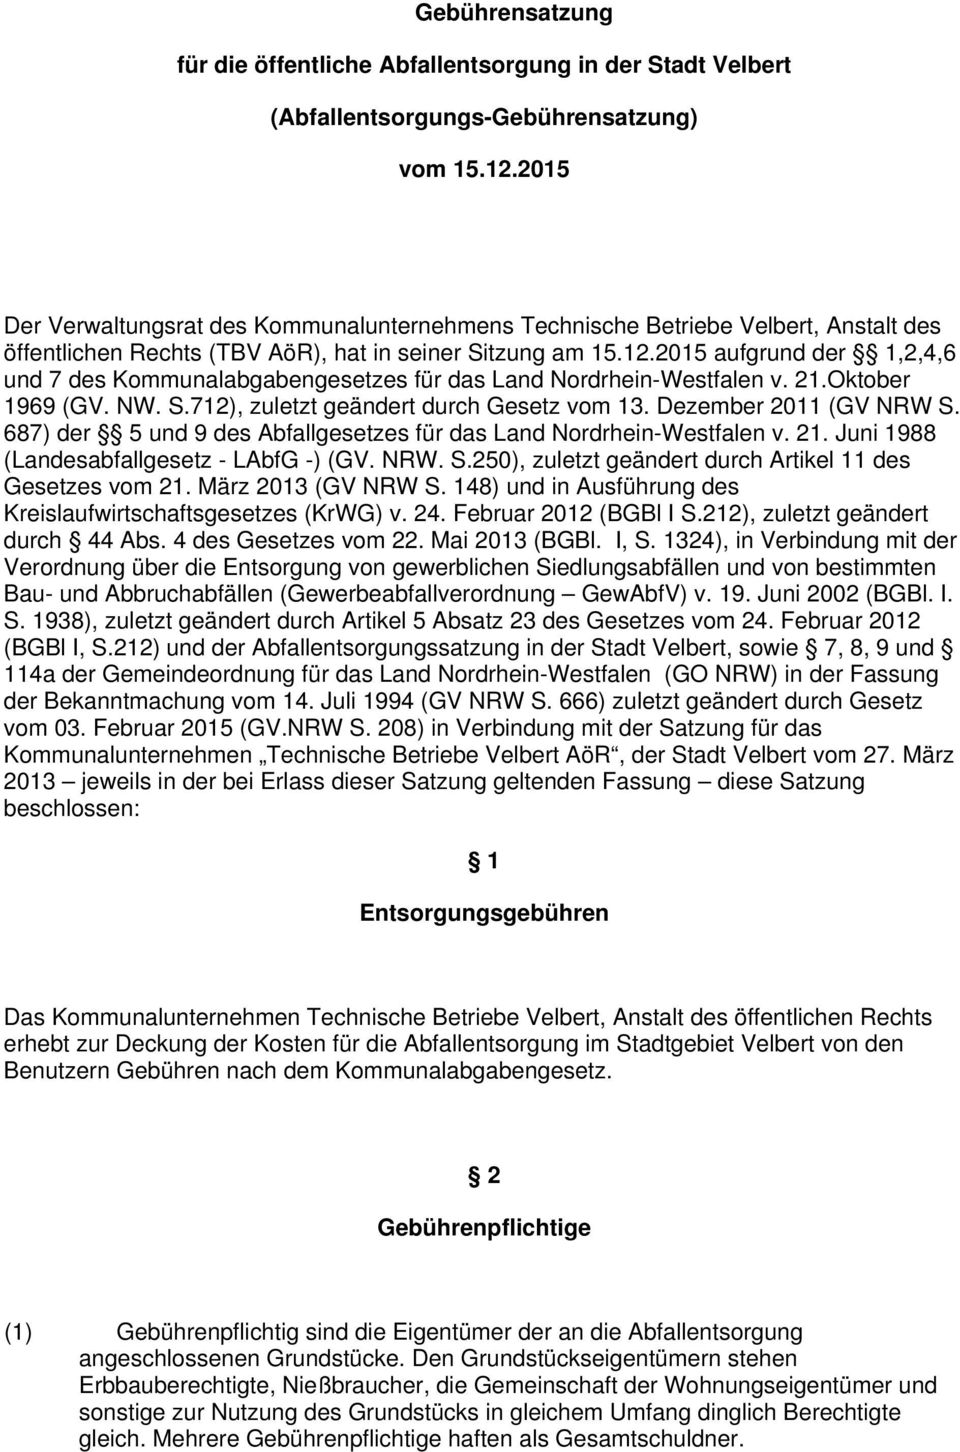 2015 aufgrund der 1,2,4,6 und 7 des Kommunalabgabengesetzes für das Land Nordrhein-Westfalen v. 21.Oktober 1969 (GV. NW. S.712), zuletzt geändert durch Gesetz vom 13. Dezember 2011 (GV NRW S.